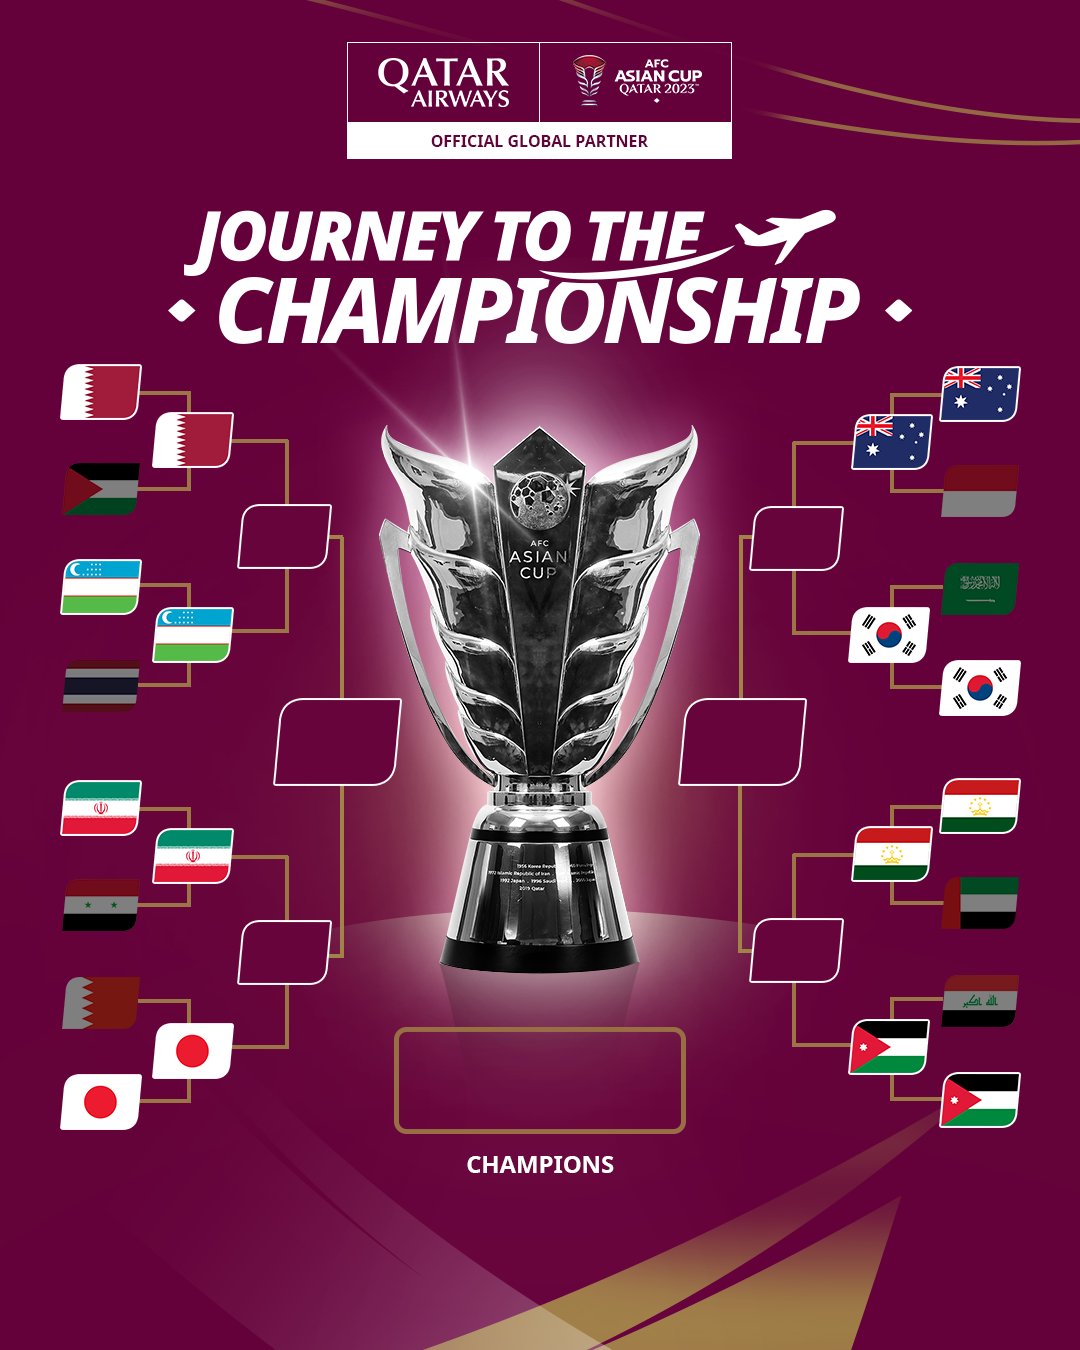 2023 카타르 아시안컵 8강 대진이 완성됐다. 대한민국은 오는 3일 오전 0시 30분 호주와 맞대결을 갖는다. AFC